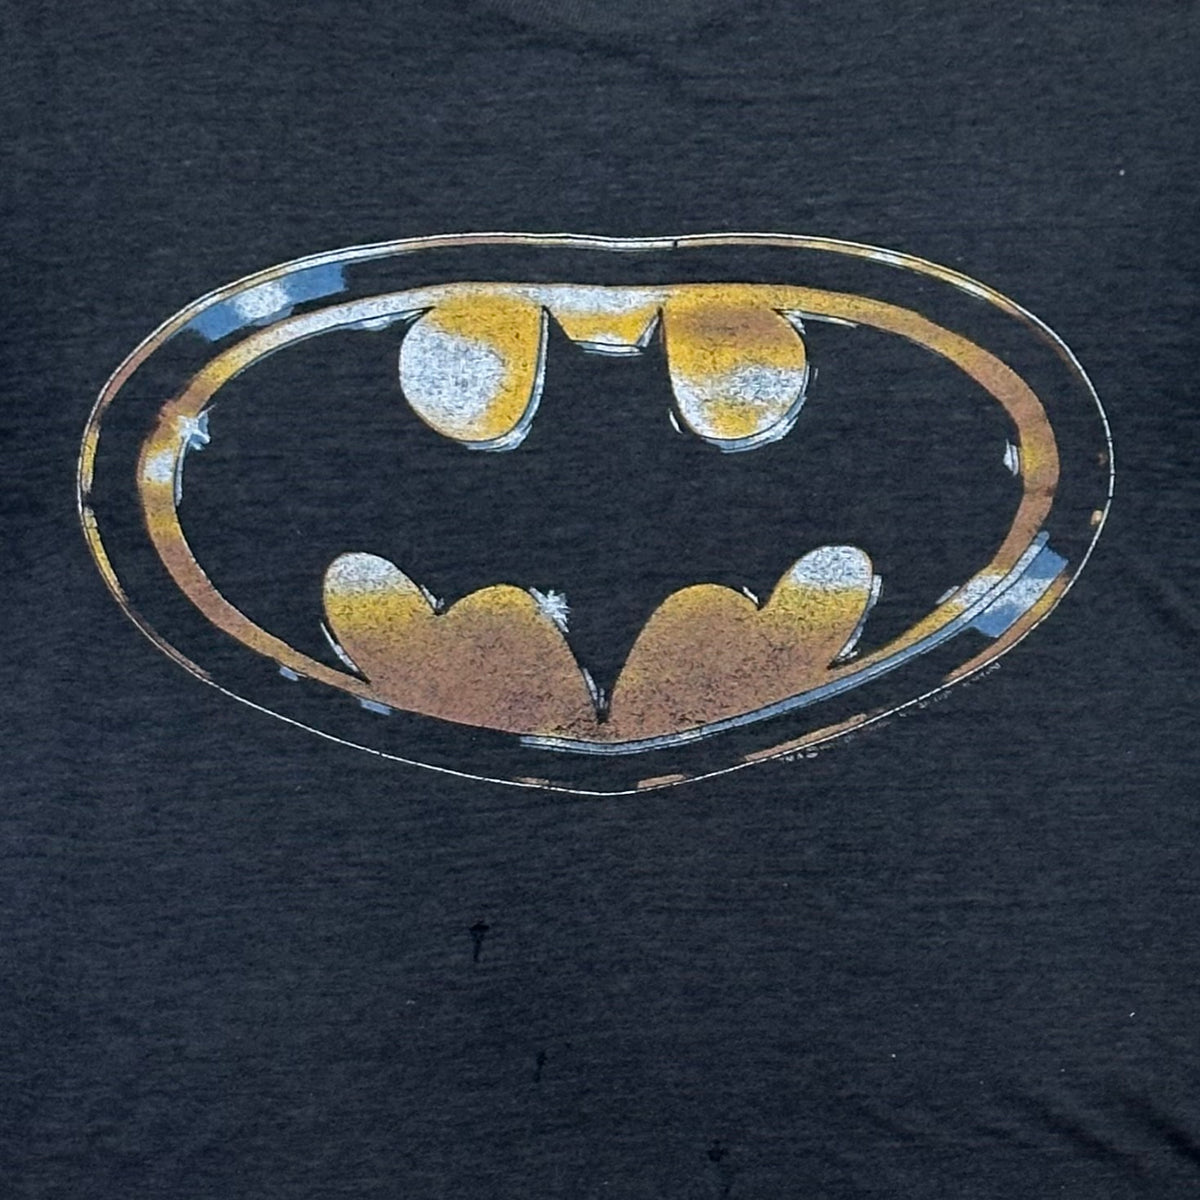 Vintage 80s Batman Movie Promo T-shirt 1989 DC Comics inc.